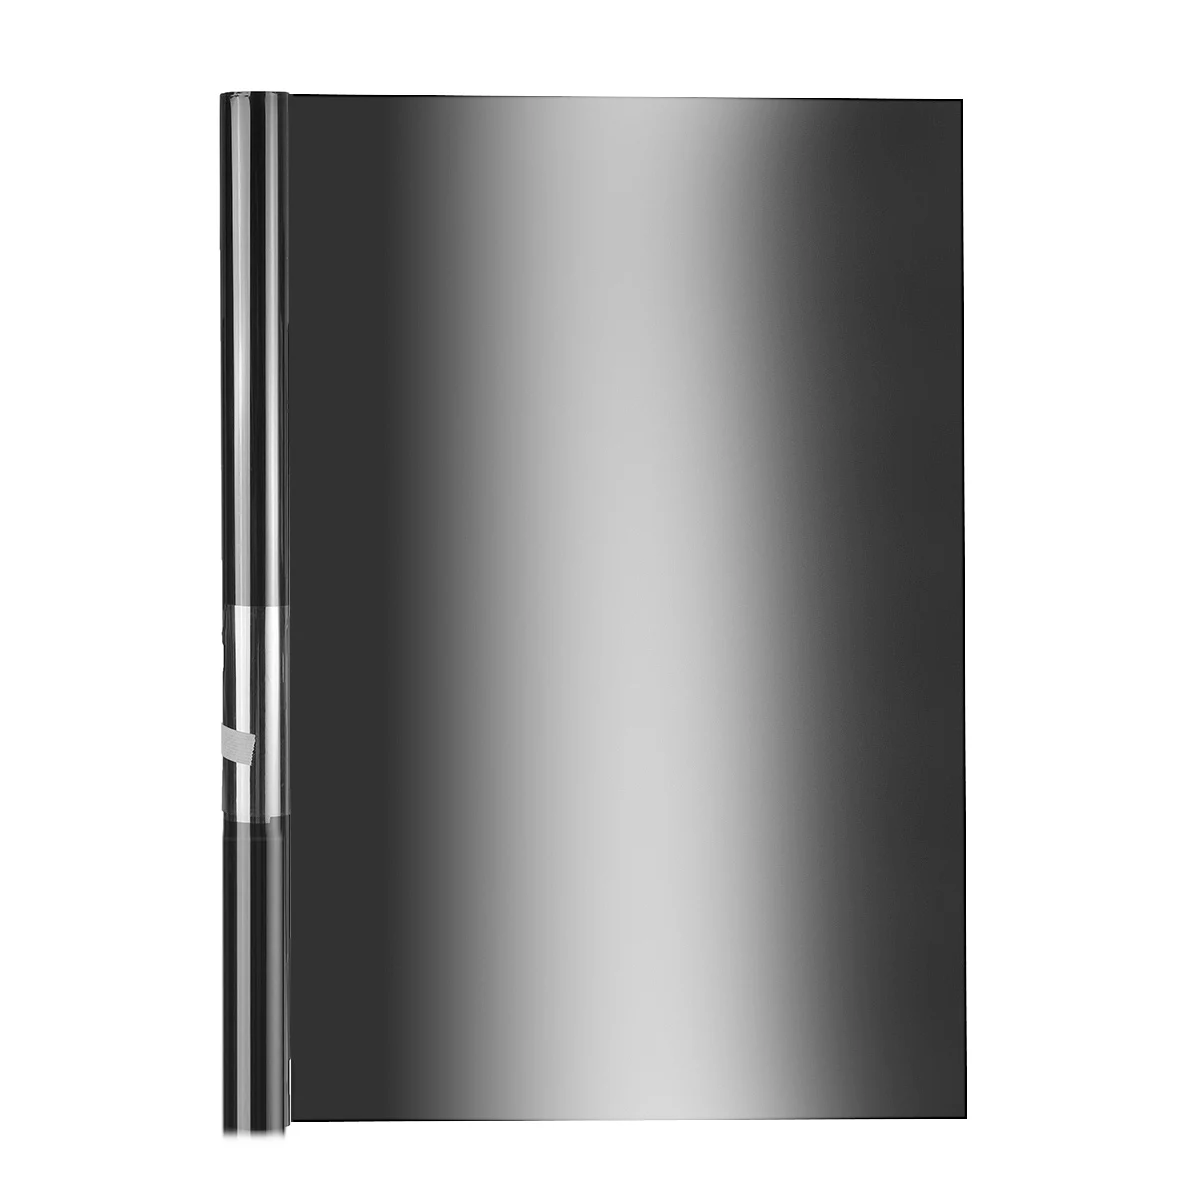 Оконное стекло оттенок УФ Отражающая пленка рулон 50 см x 1 м/3 м/6 м домашний офис 15-22% VLT безопасный Анти-взрыв солнцезащитный блок ПЭТ Материал - Цвет: Black Silver 1M